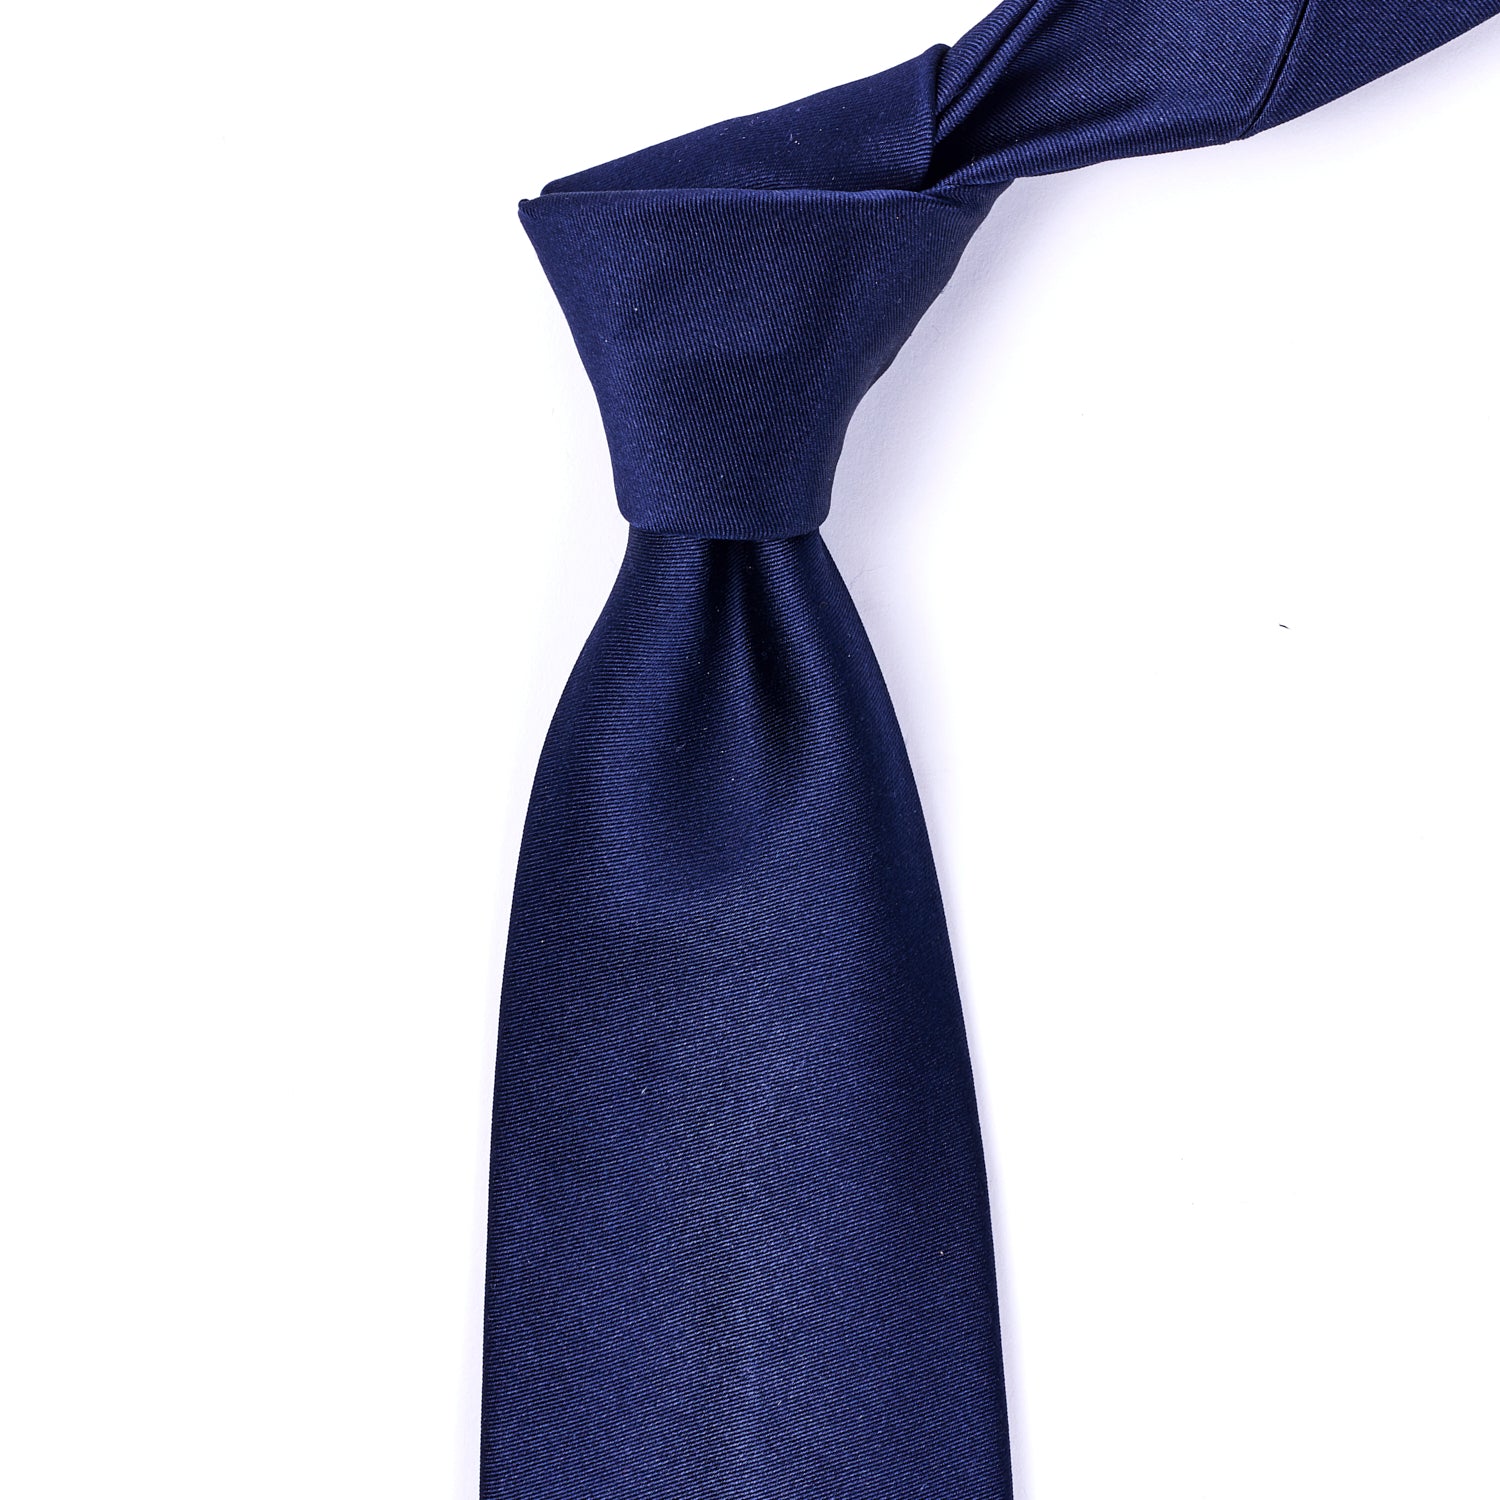 Sovereign Grade Midnight Blue Satin Tie, 150 cm